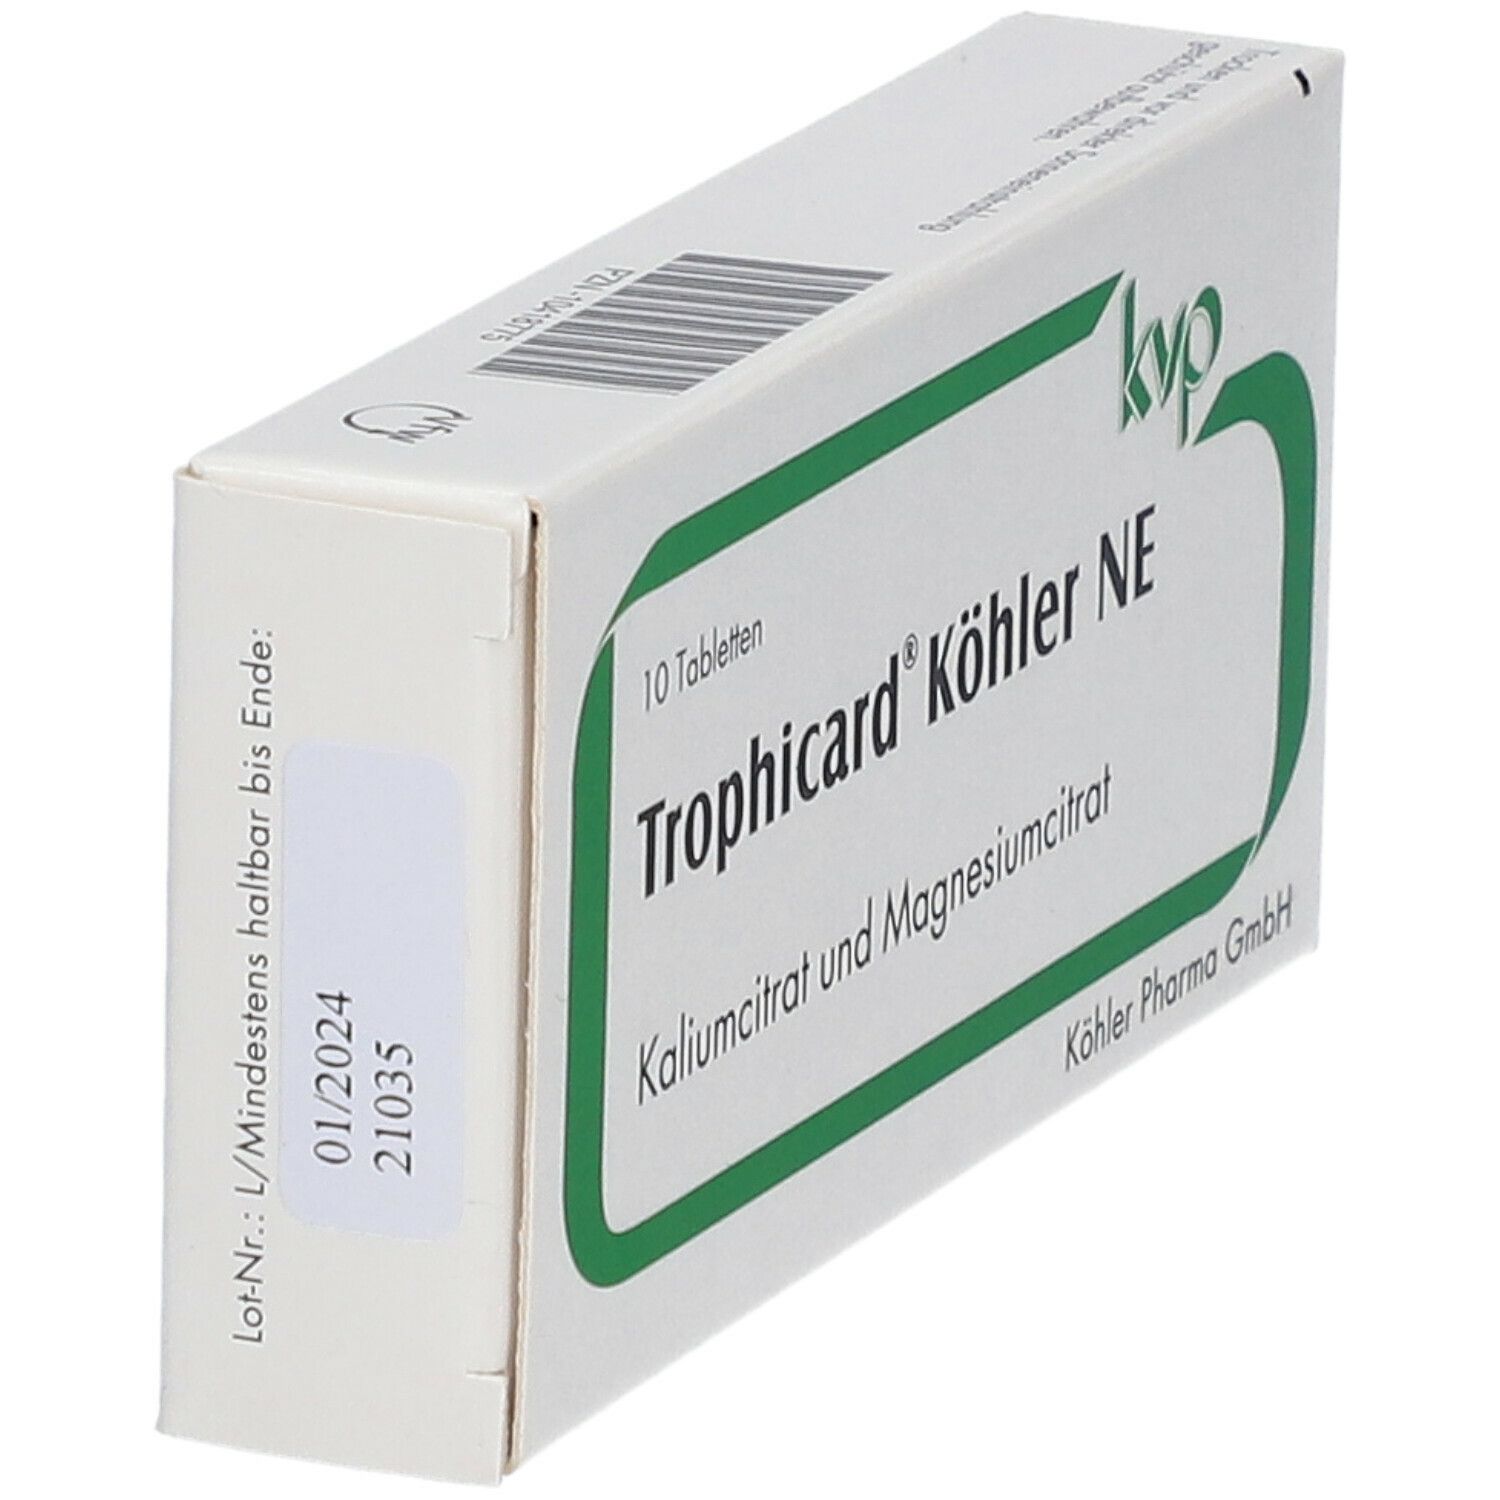 Trophicard® Köhler NE Tabletten